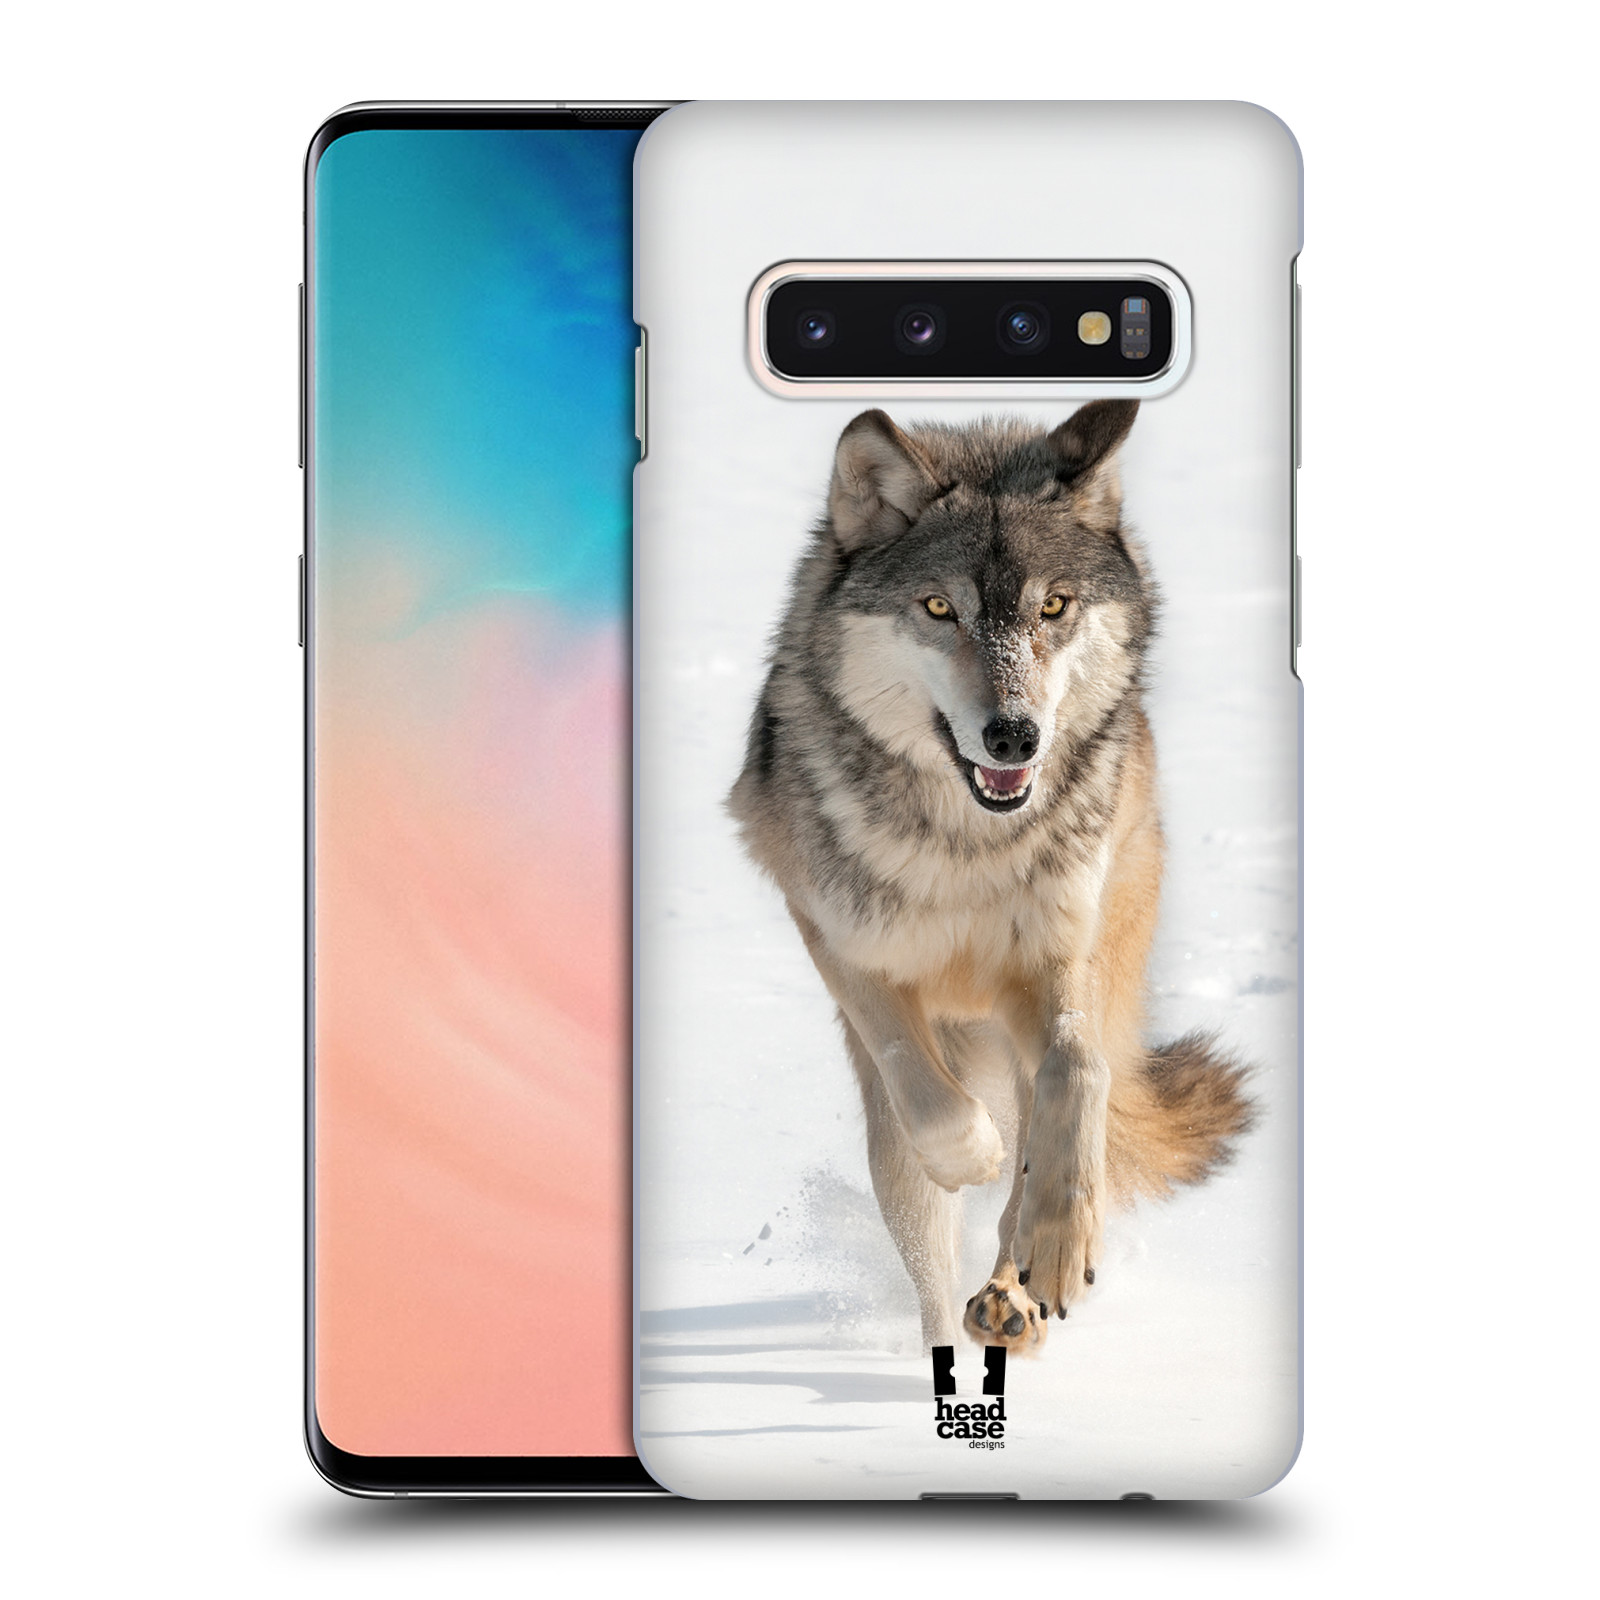 Zadní obal pro mobil Samsung Galaxy S10 - HEAD CASE - Svět zvířat divoký vlk